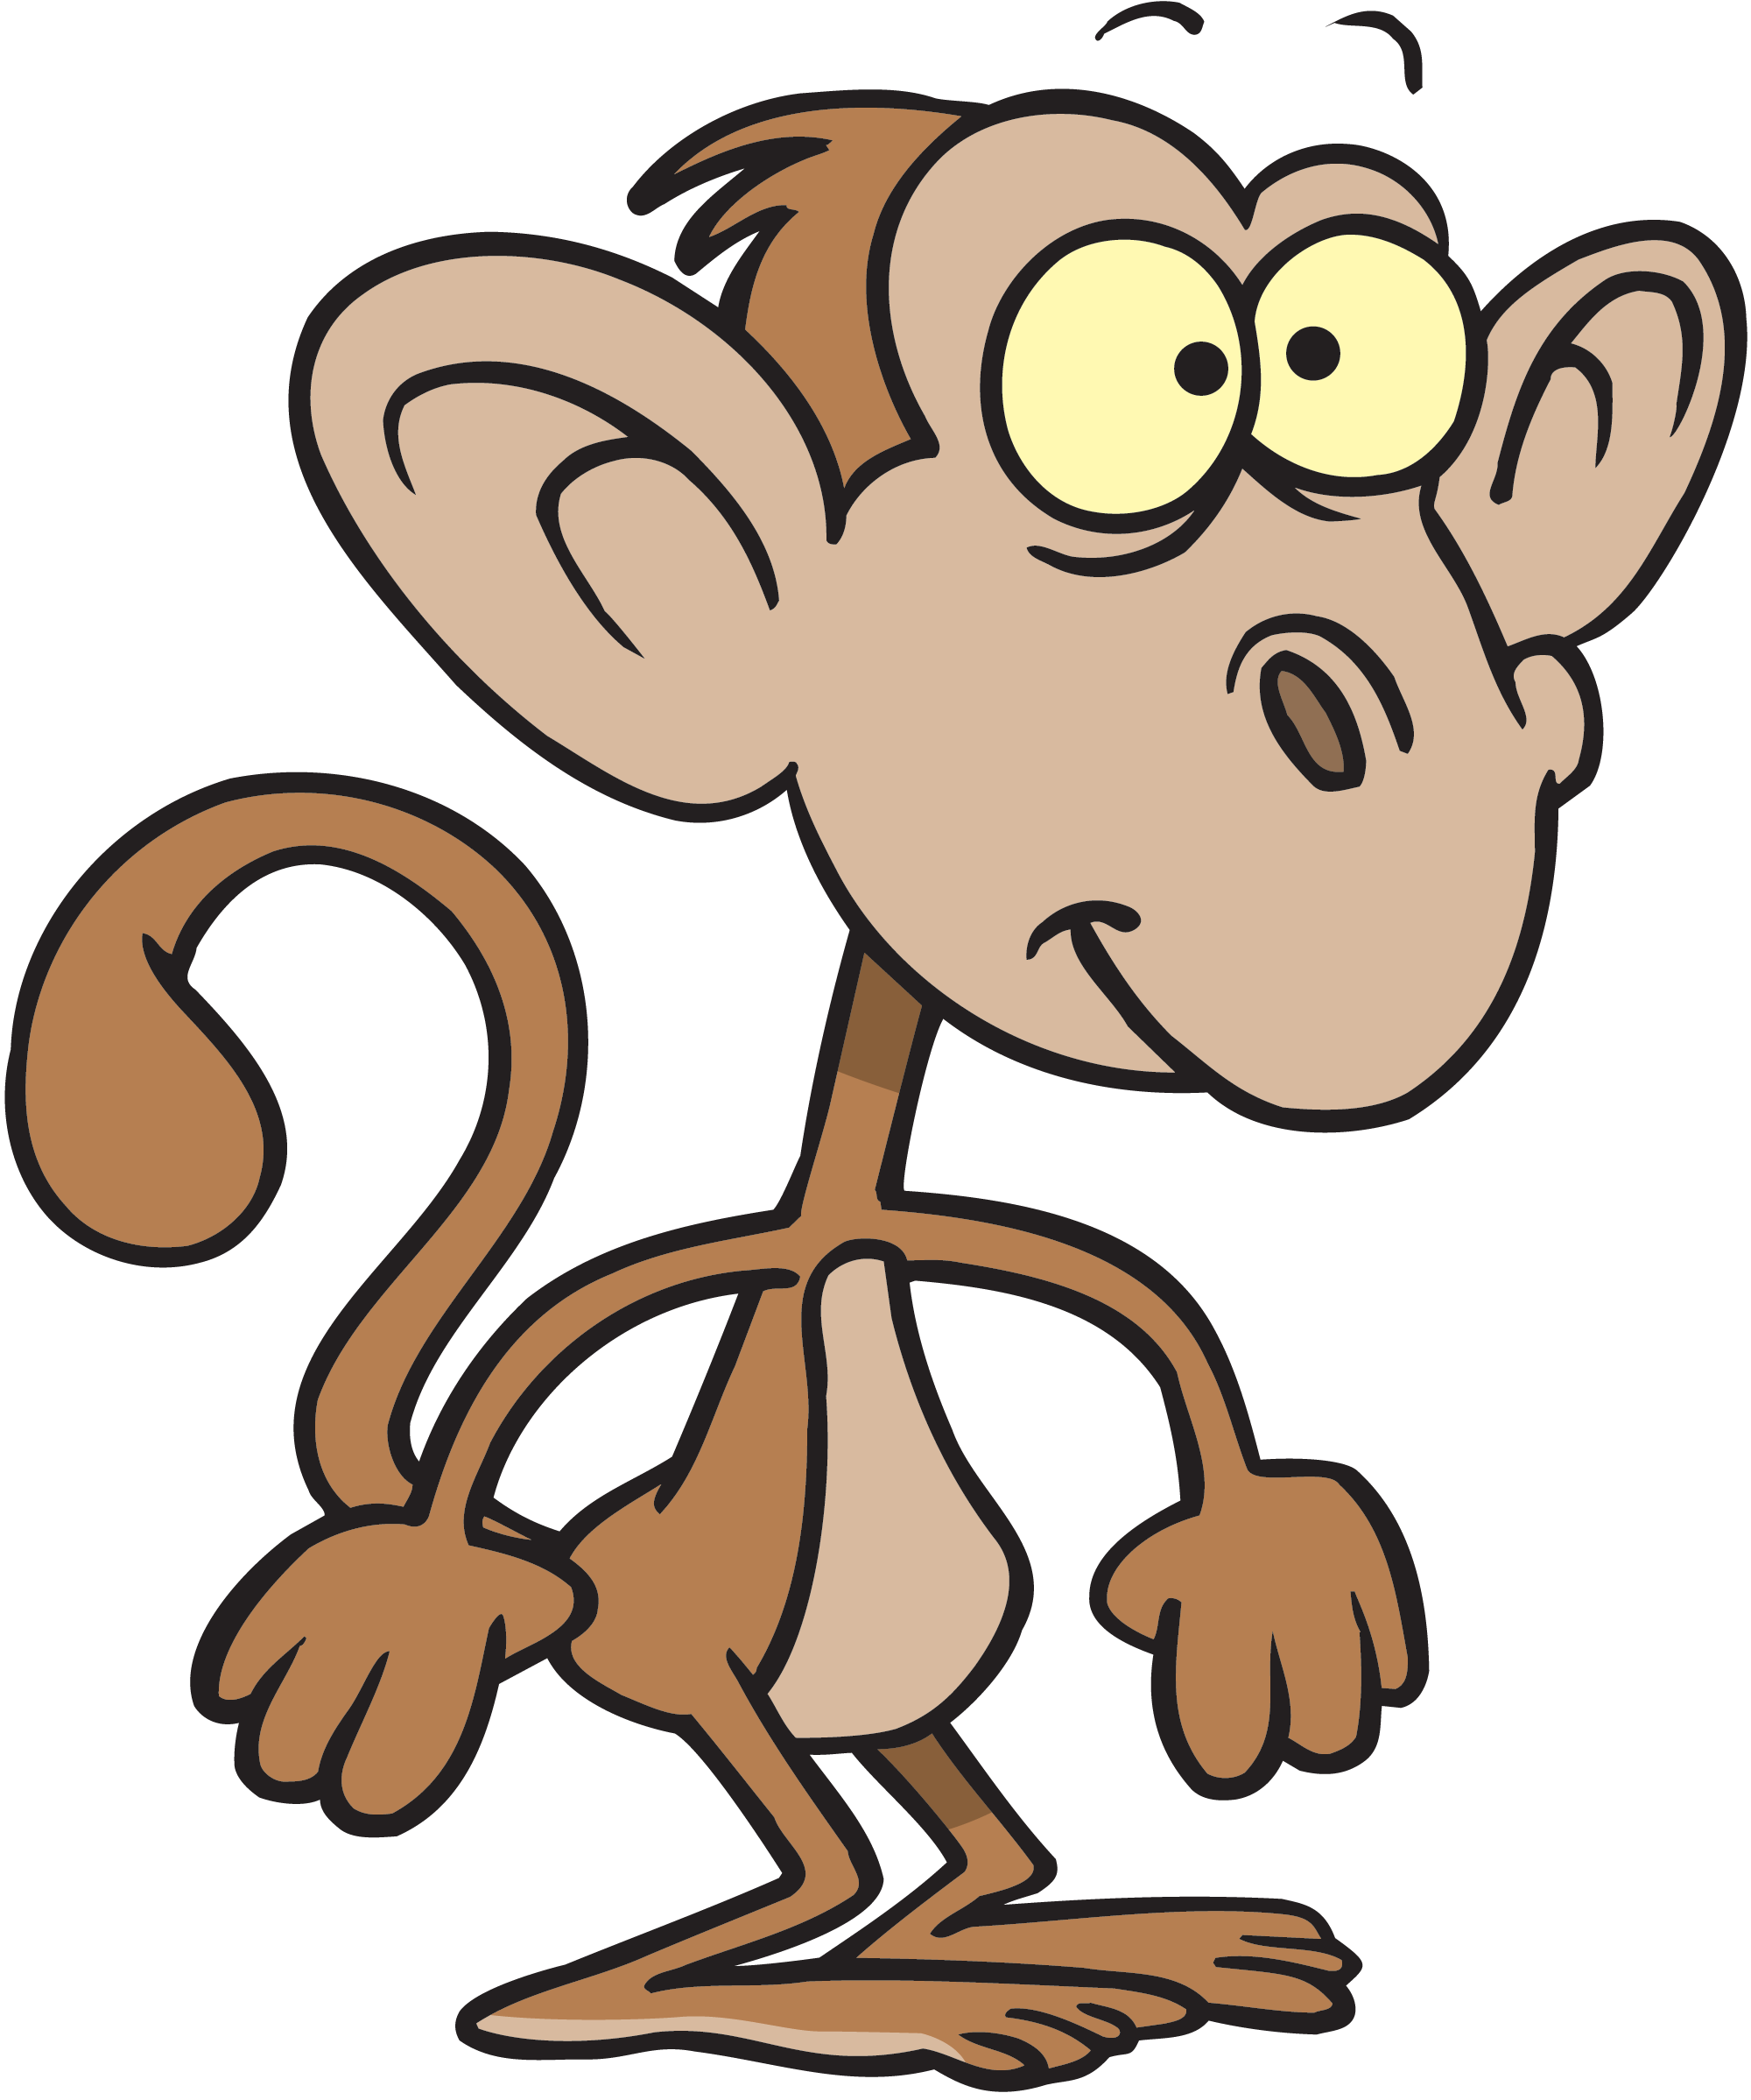 cartoon monkey clipart - photo #15